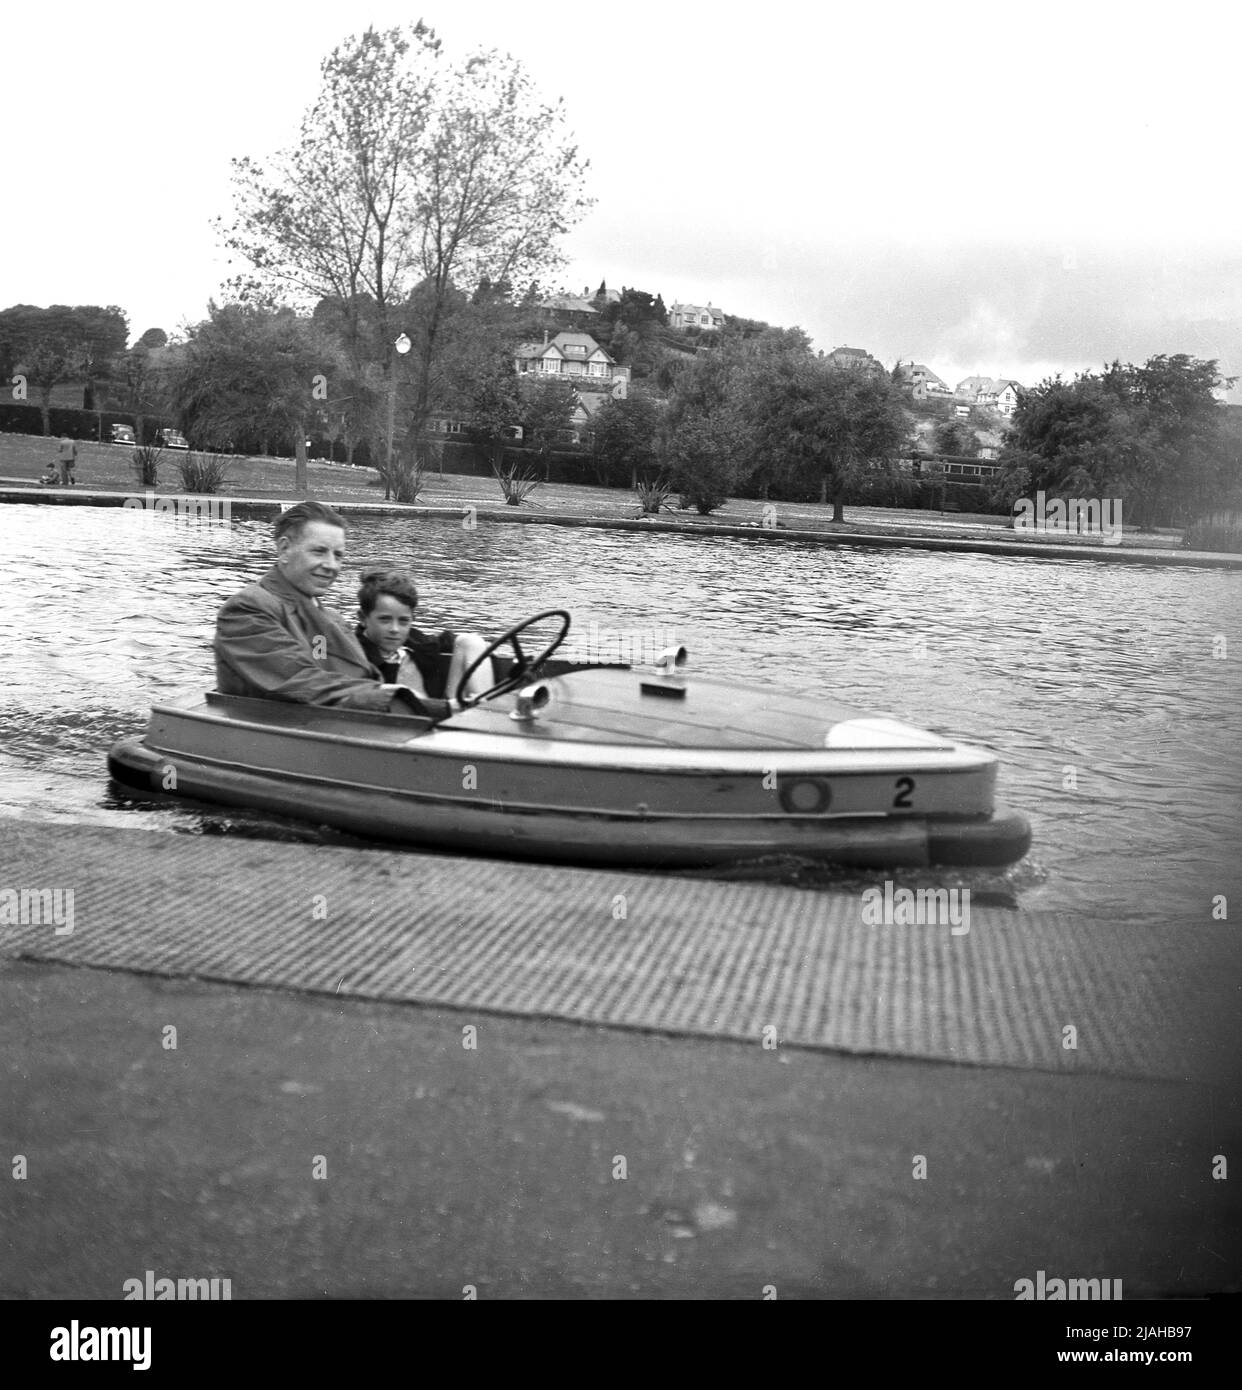 1950s, historisches Großbritannien der Nachkriegszeit, auf einem Bootssee in einem Park, ein Vater mit seinem jungen Sohn zusammen, in einem kleinen hölzernen elektrischen Vergnügungsboot der Zeit. Um die Wende des 20.. Jahrhunderts begannen Bootsseen als eine Form der Freizeit für Menschen, die in Städten leben, gebaut zu werden. Anfang 1930s wurden Ruderboote auf einigen von ihnen durch Schiffe mit neuer Technologie ersetzt, kleine Elektromotorboote mit einer Geschwindigkeit von 4mph, die erste war die "Glida", im Battersea Park im Jahr 1929. Verschiedene Versionen dieses kleinen Elektromotorbootes wurden eingeführt und blieben bis zum 1960s im Einsatz. Stockfoto